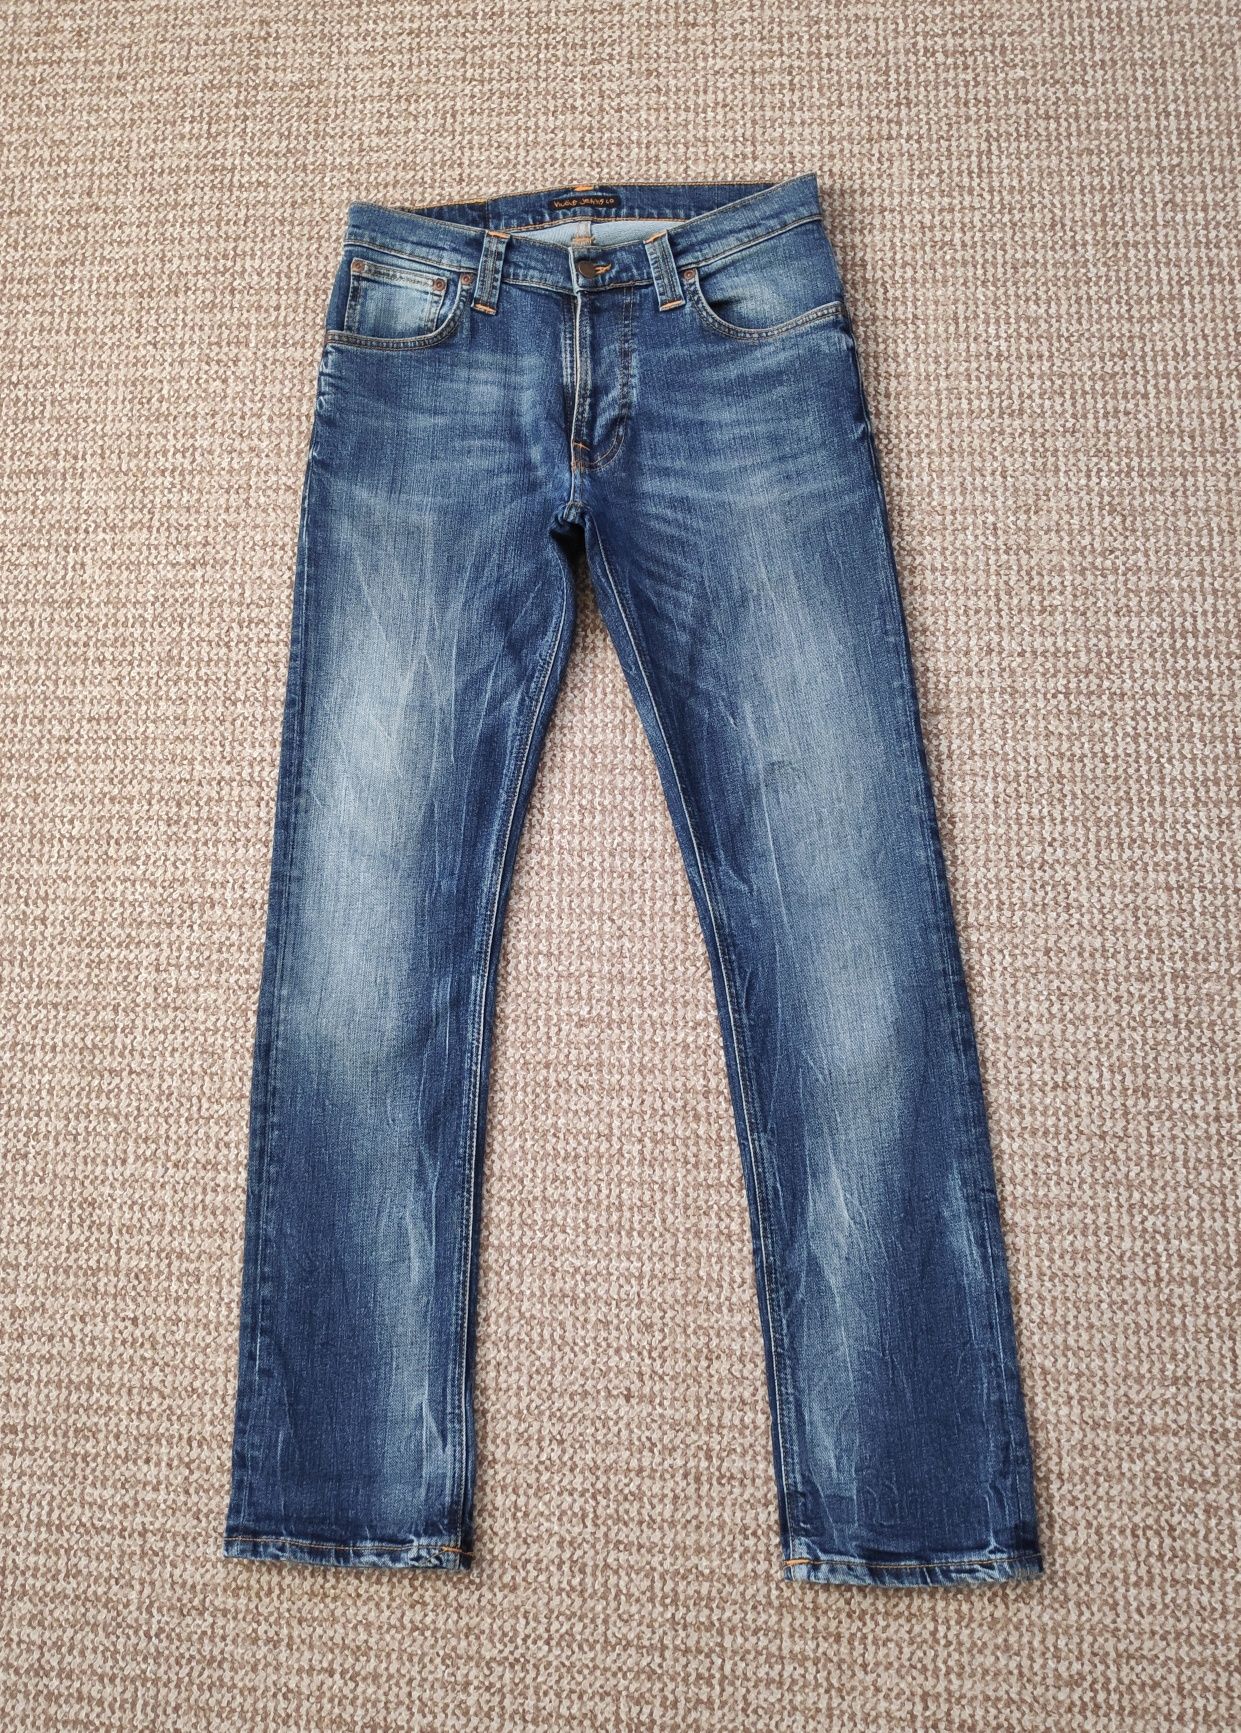 Nudie Jeans thin finn джинсы slim fit оригинал W30 L32